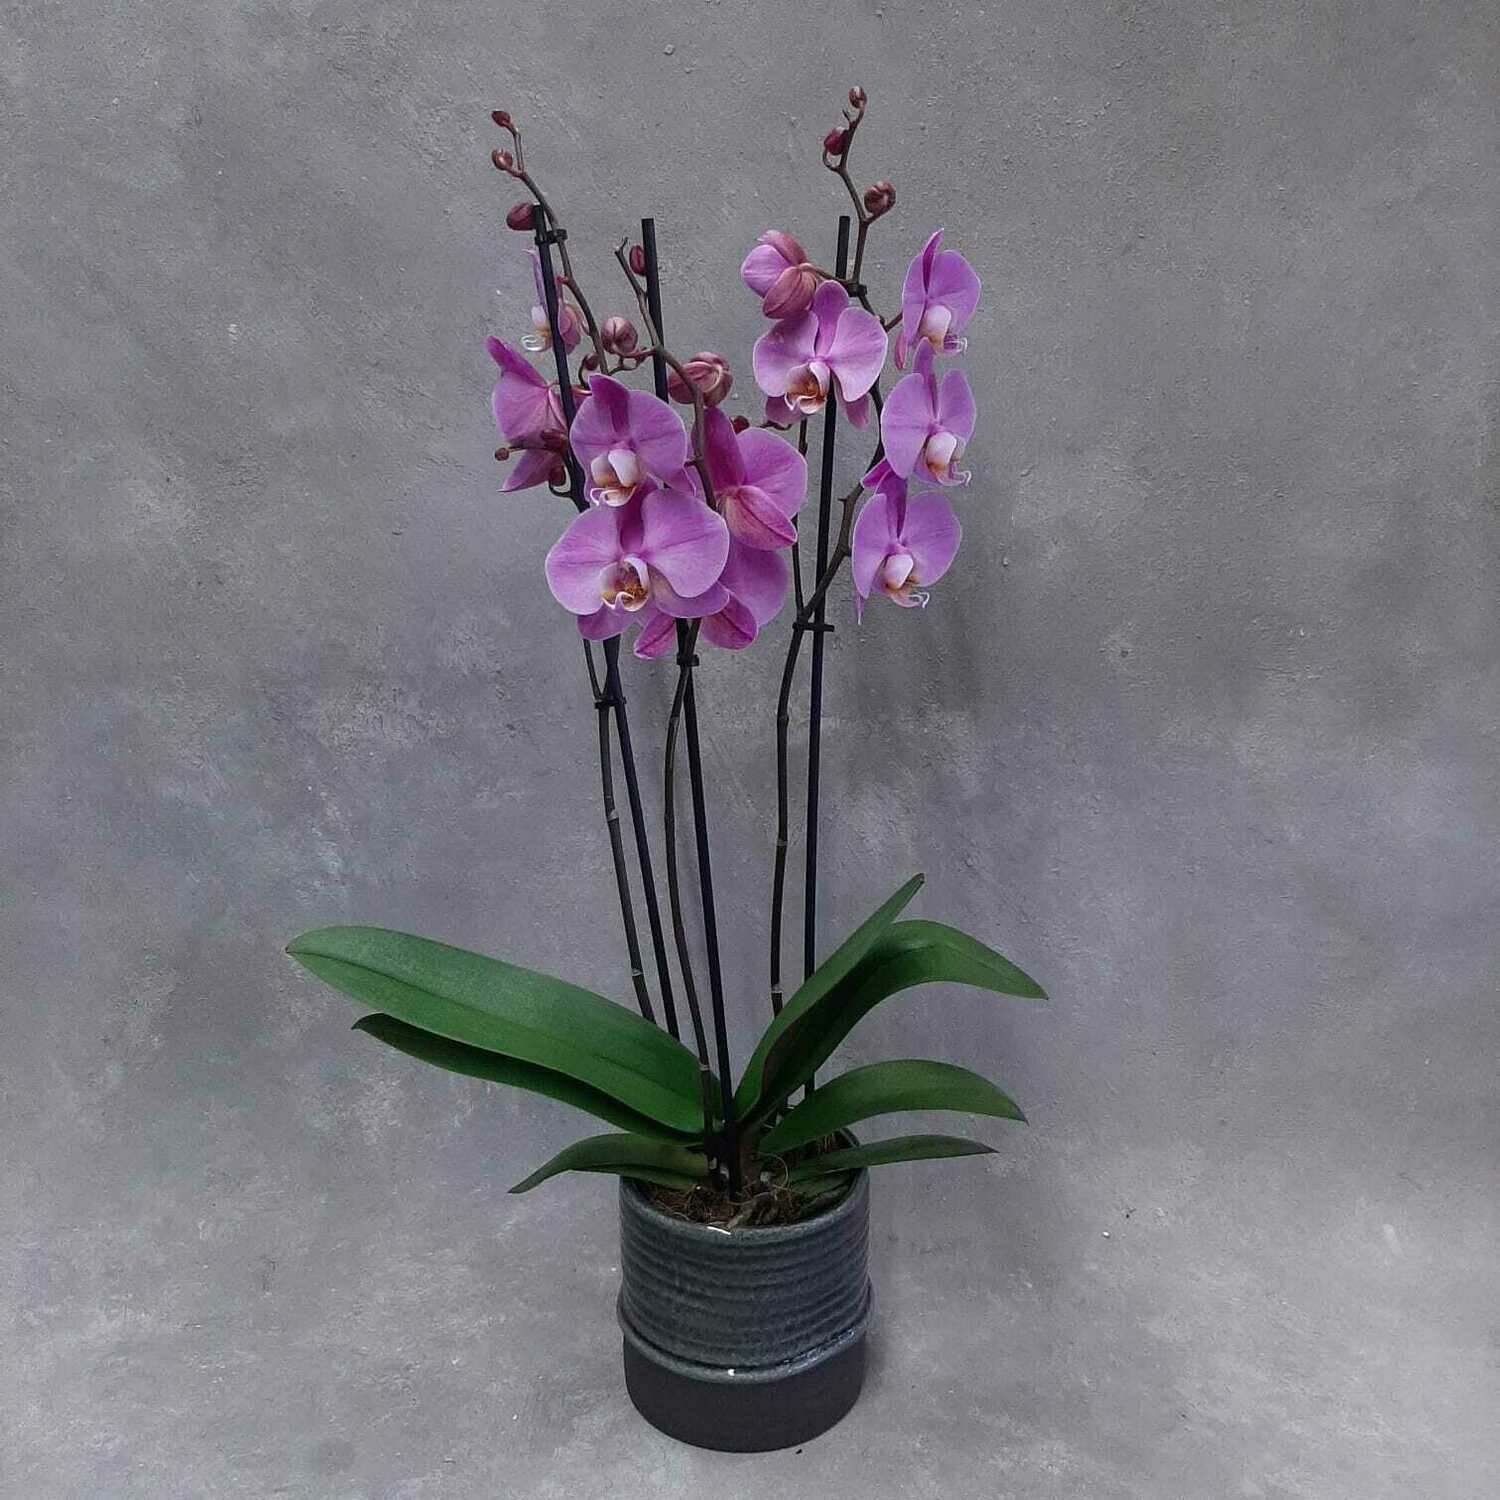 Orkidea valitsemasai värisenä